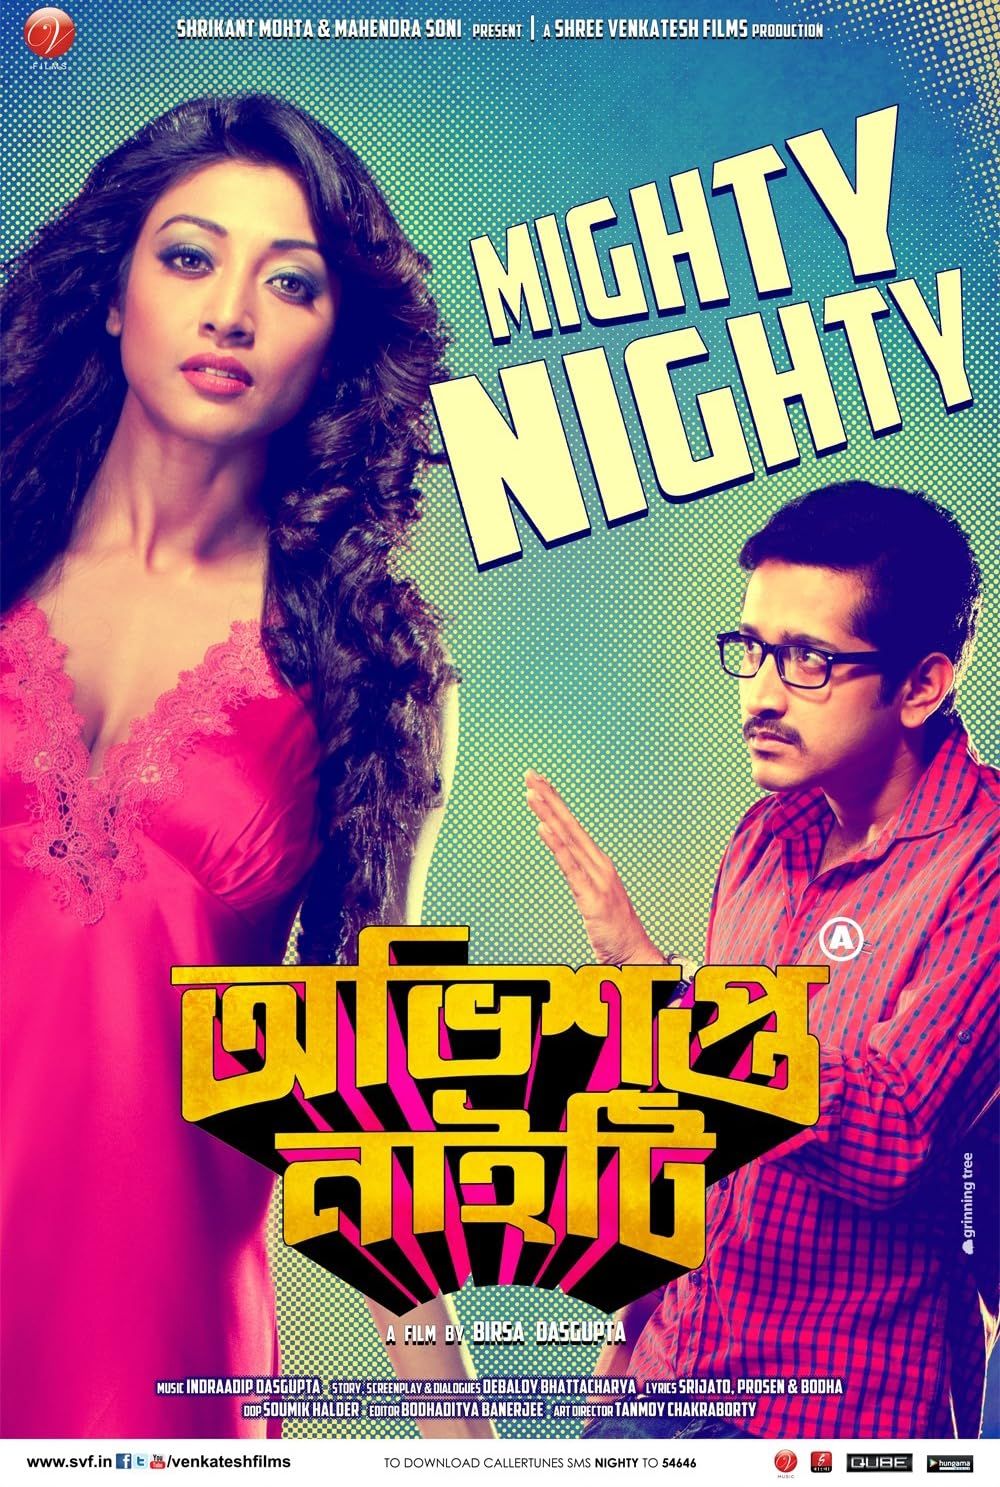 Obhishopto Nighty (2014) Bengali Movie download full movie